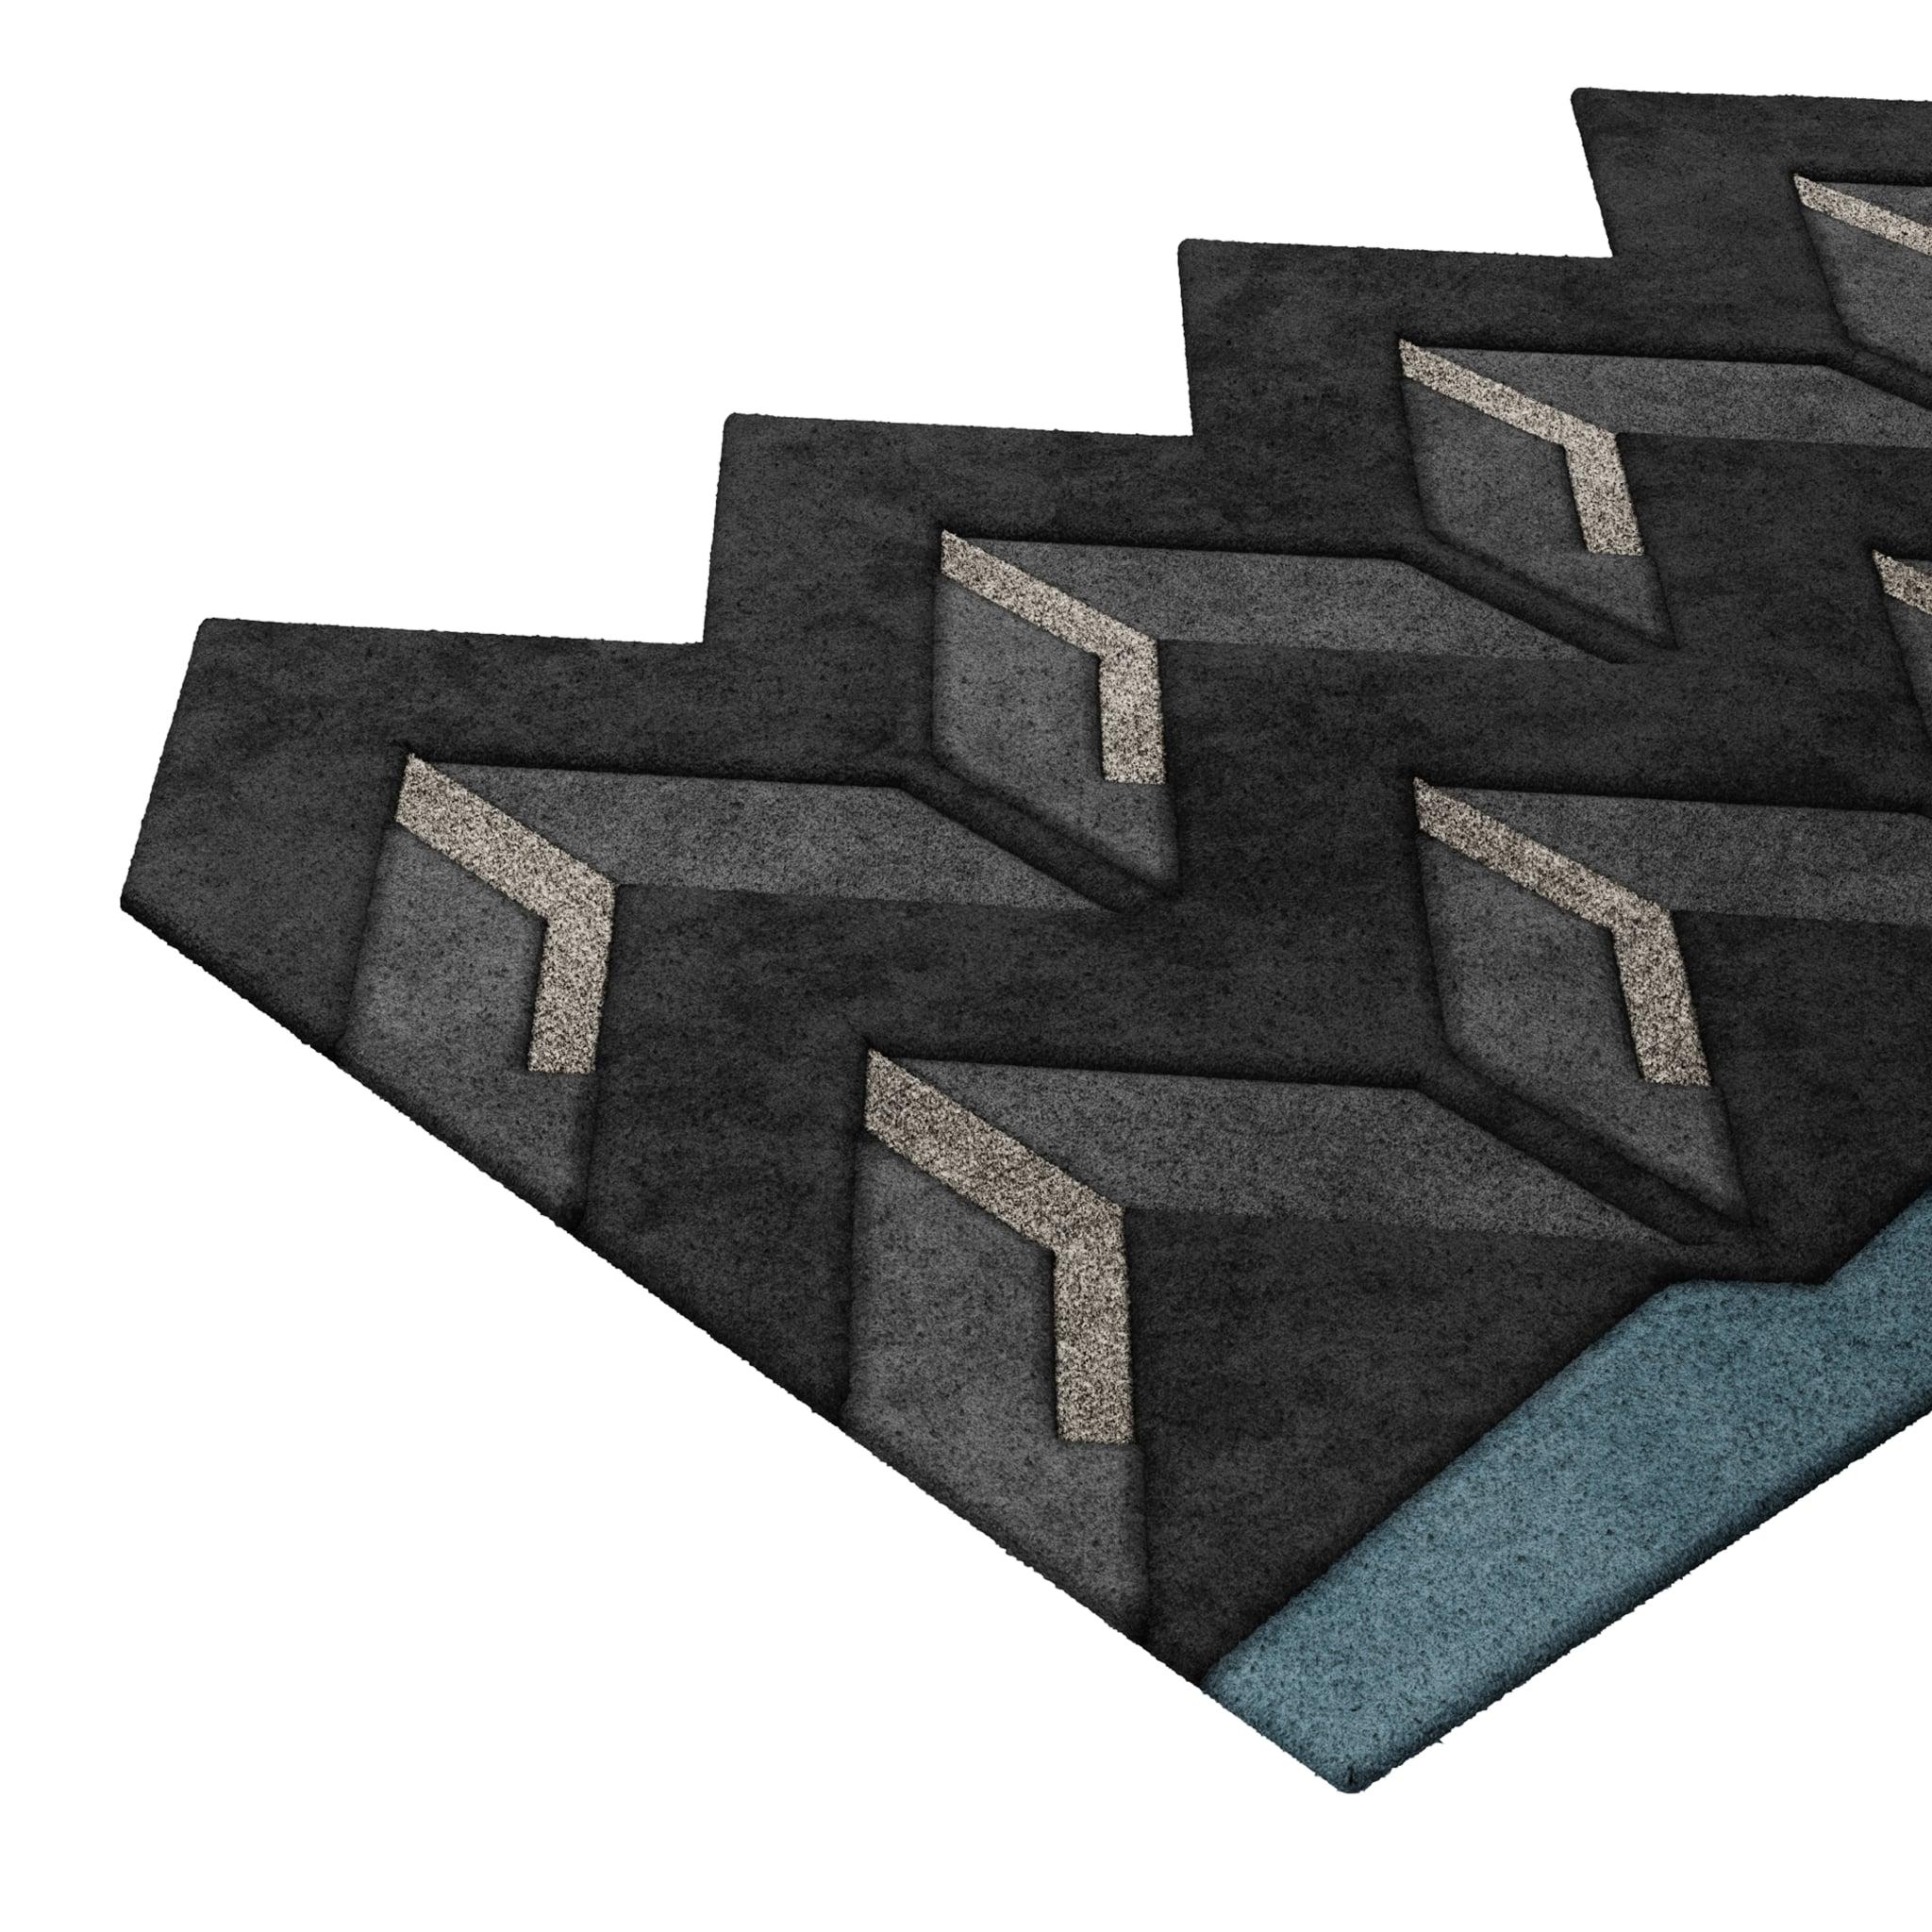 Tapis Retro #003 ist ein Retro-Teppich mit einer unregelmäßigen Form und zeitlosen Farben. Inspiriert von architektonischen Linien, setzt dieser geometrische Teppich in jedem Wohnbereich ein Zeichen. 

Der Retro-Teppich in Schwarz, Weiß und Blau mit